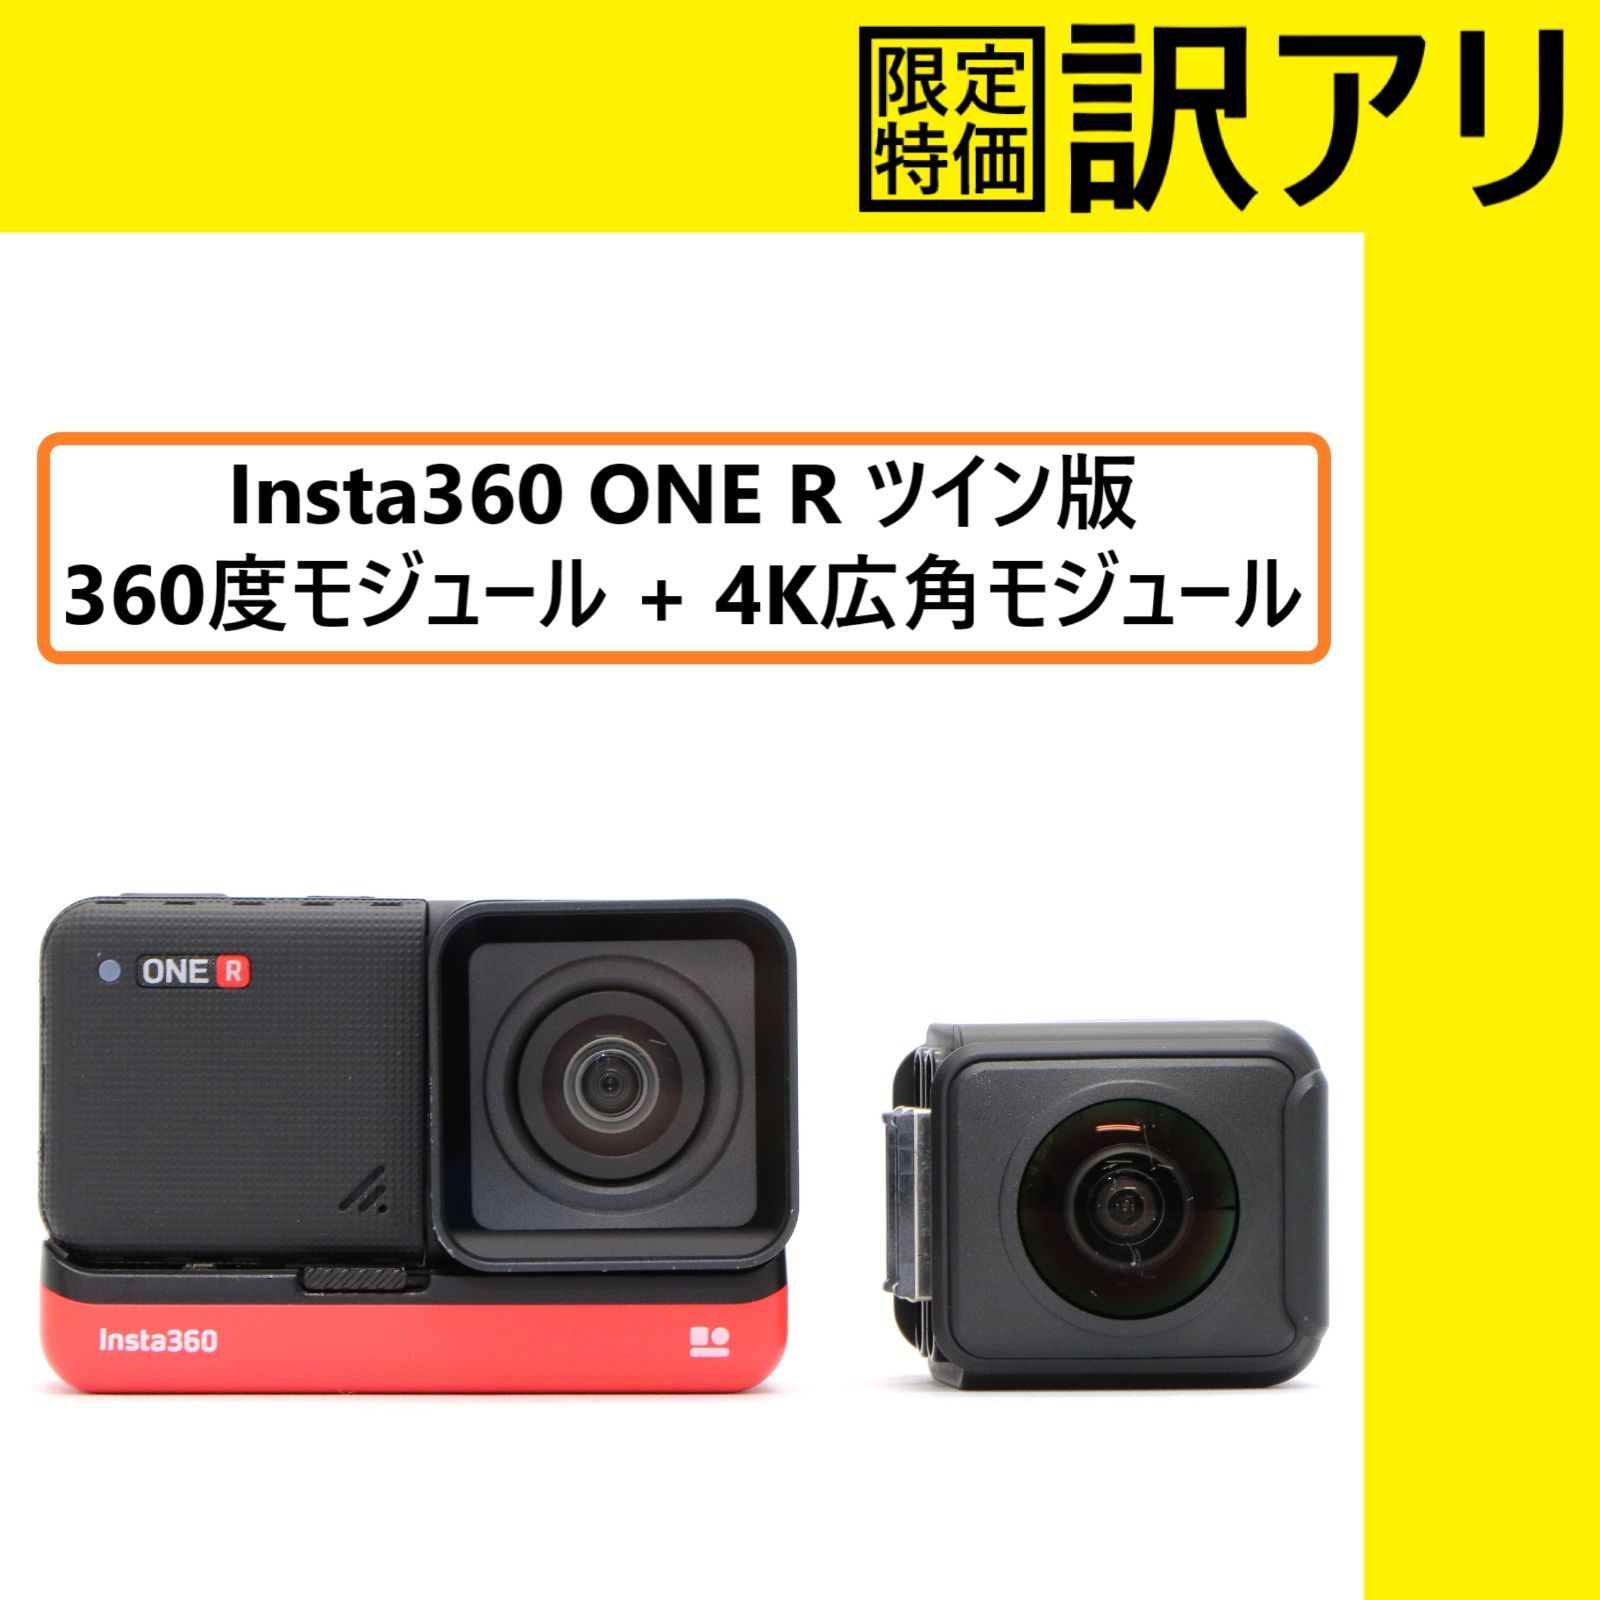 Insta360 ONE R ツイン版 360度モジュールのみ 入荷 17680円 www